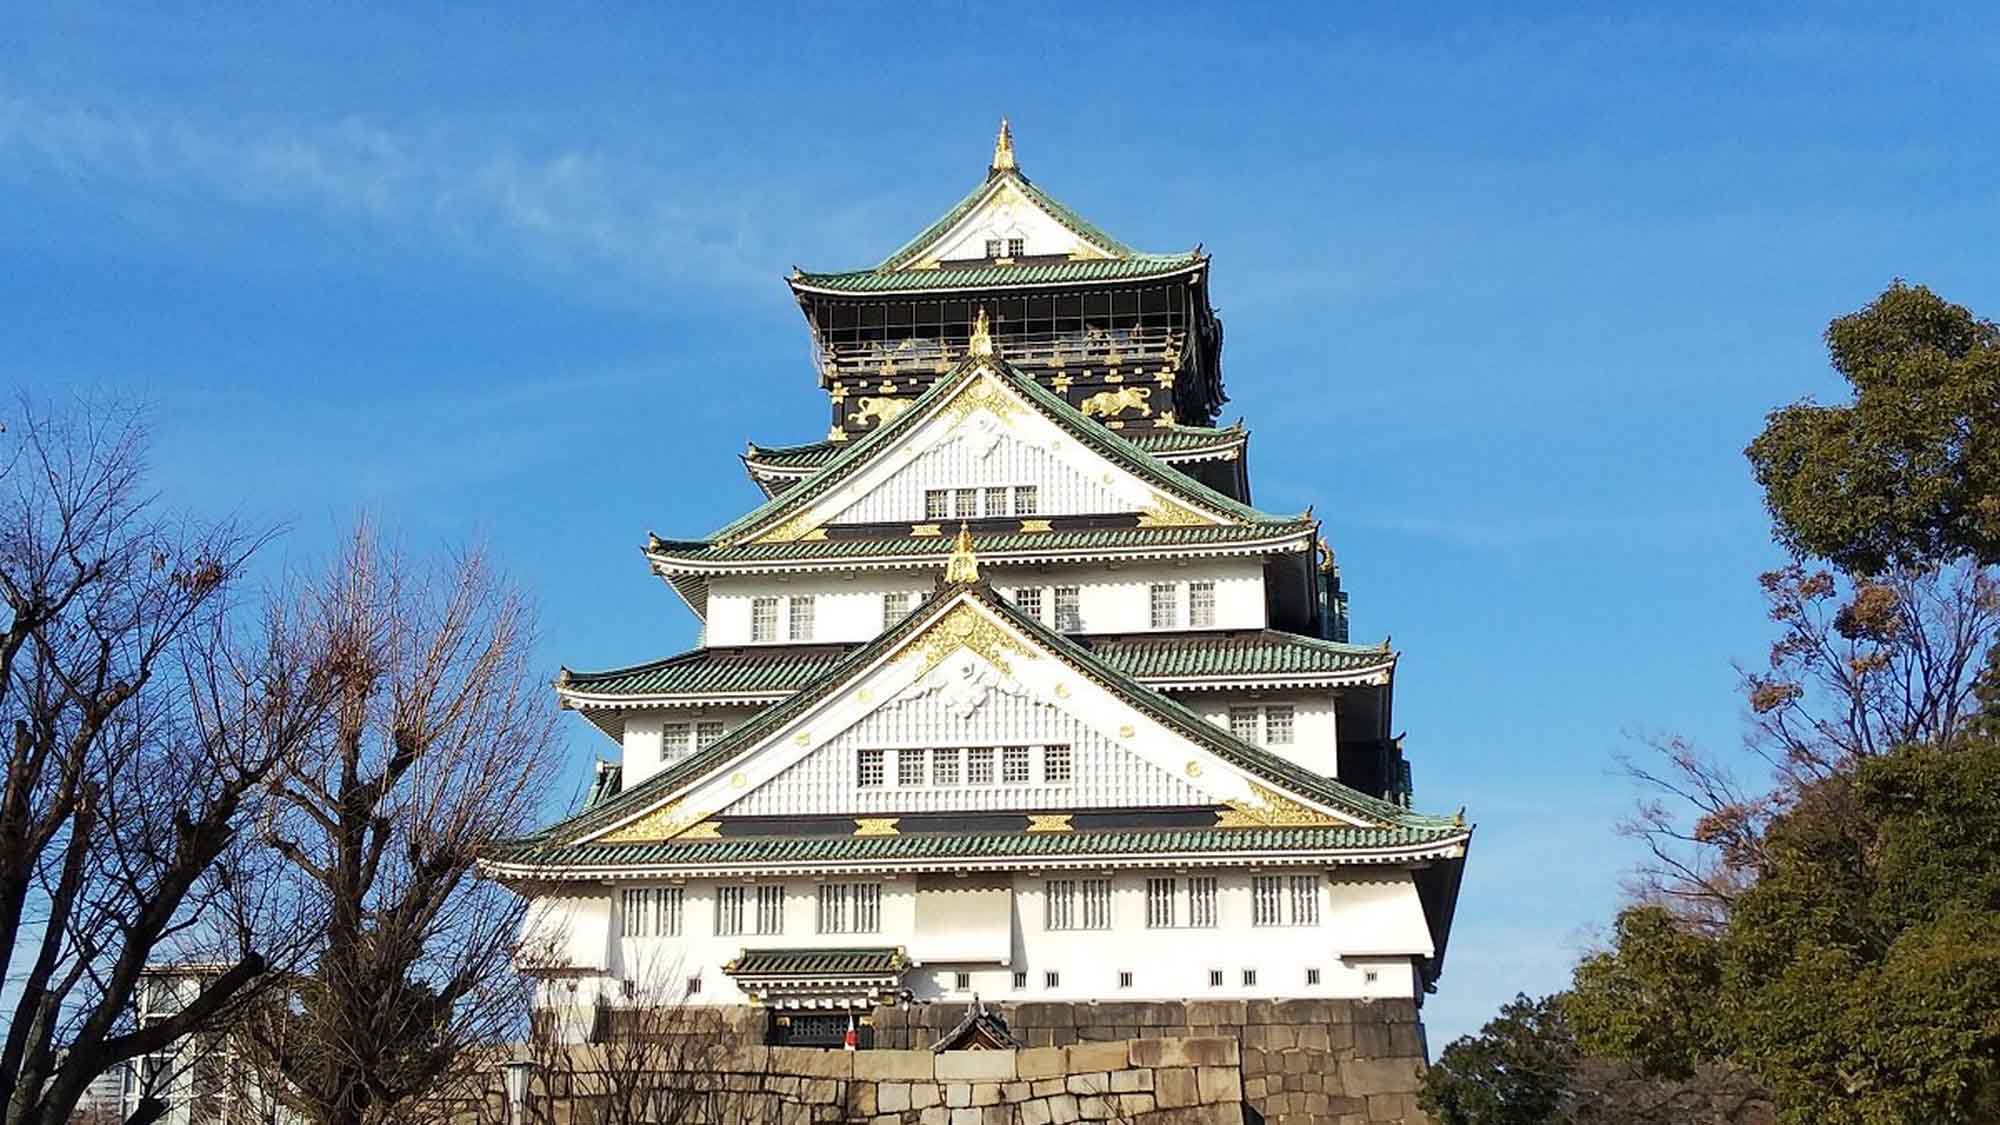 【大阪城】大阪城は大阪のシンボルで、桜の名所としても知られるエリアです。